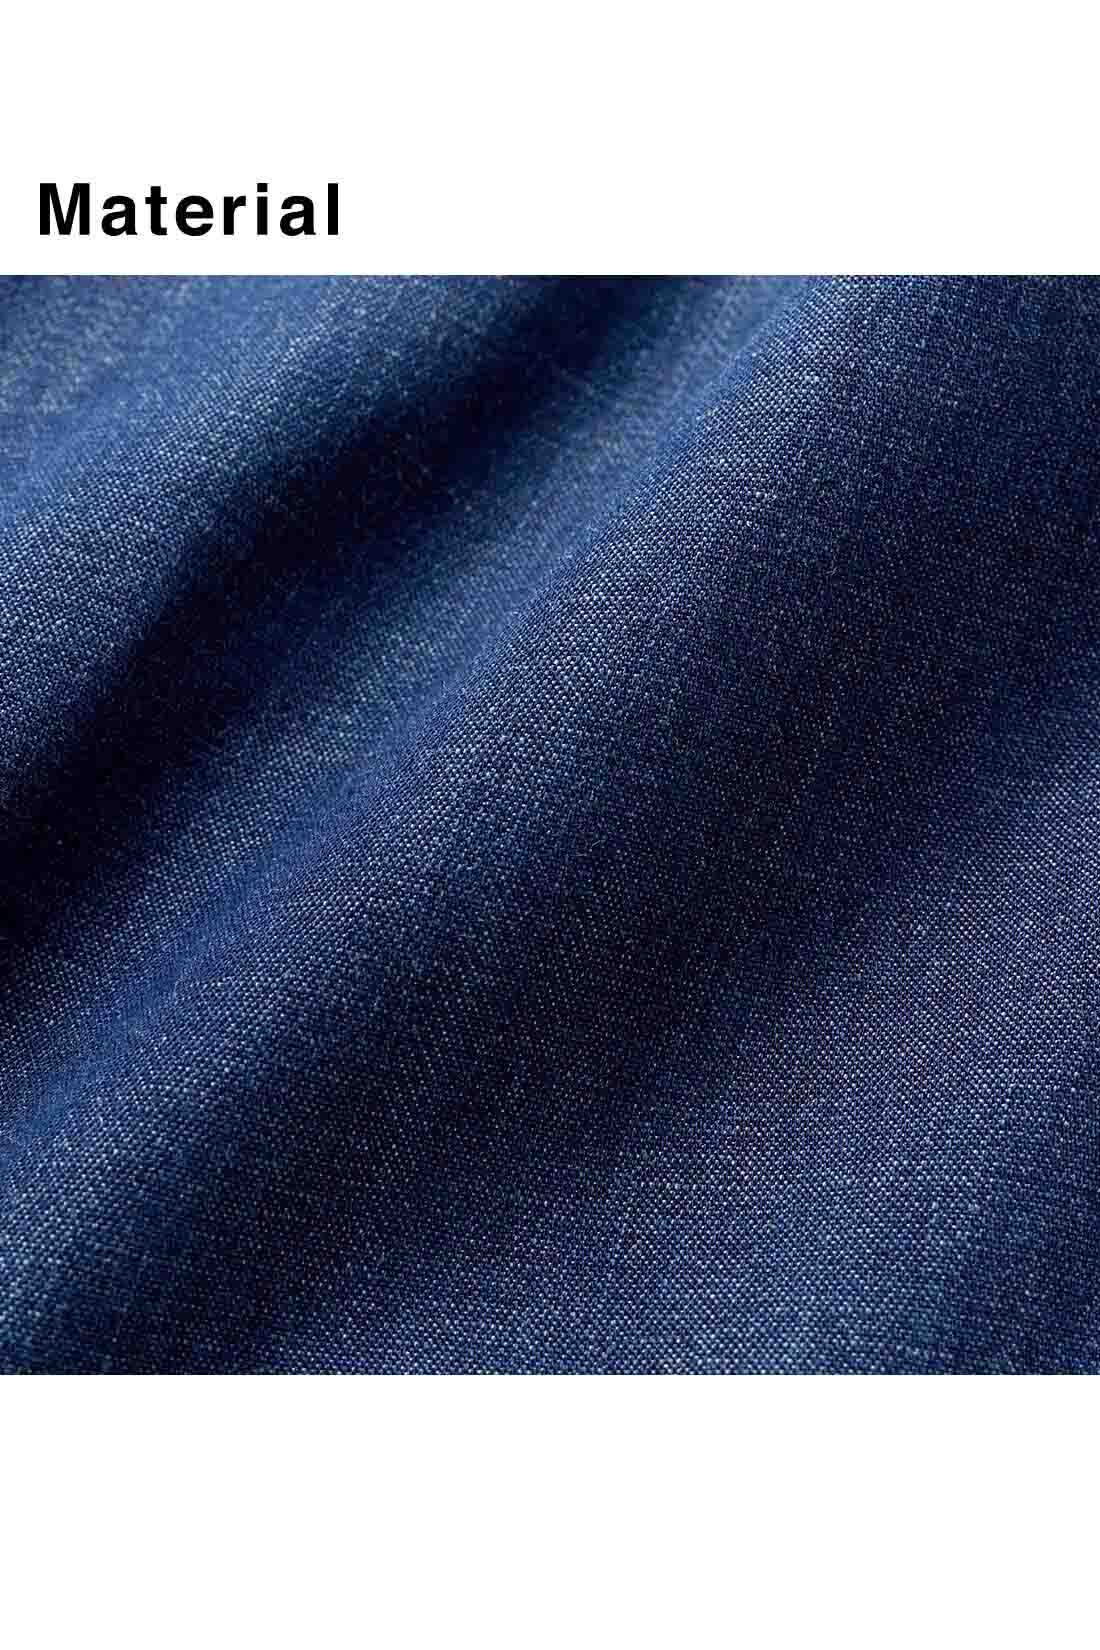 イディット|IEDIT[イディット]　接触冷感素材で涼やかな やわらかワイドシルエットデニムパンツ〈ネイビー〉|テンセルTM繊維・綿・麻のナチュラルな素材感。濃いブルーとネップの風合いがデニム好きを魅了。